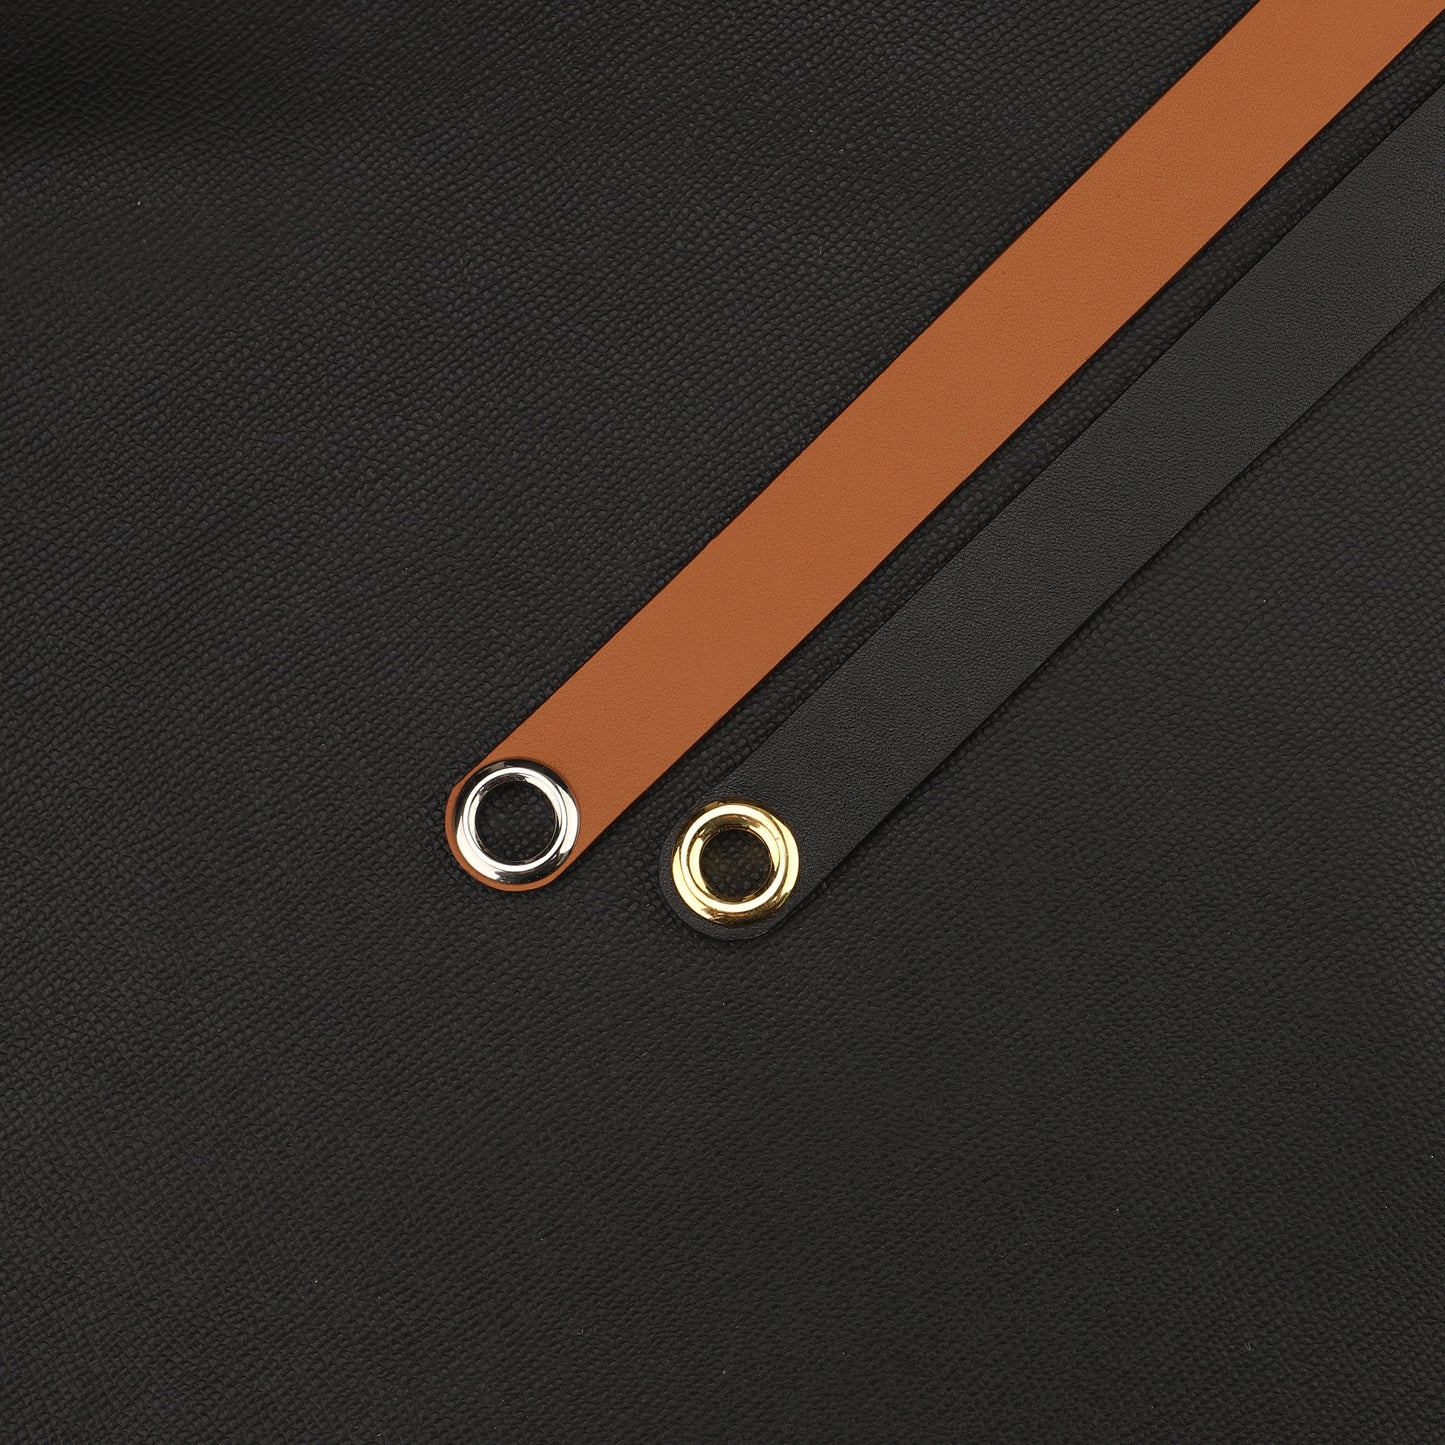 Leather Shoulder Strap for Herbag Swift Leather Shoulder Bag 